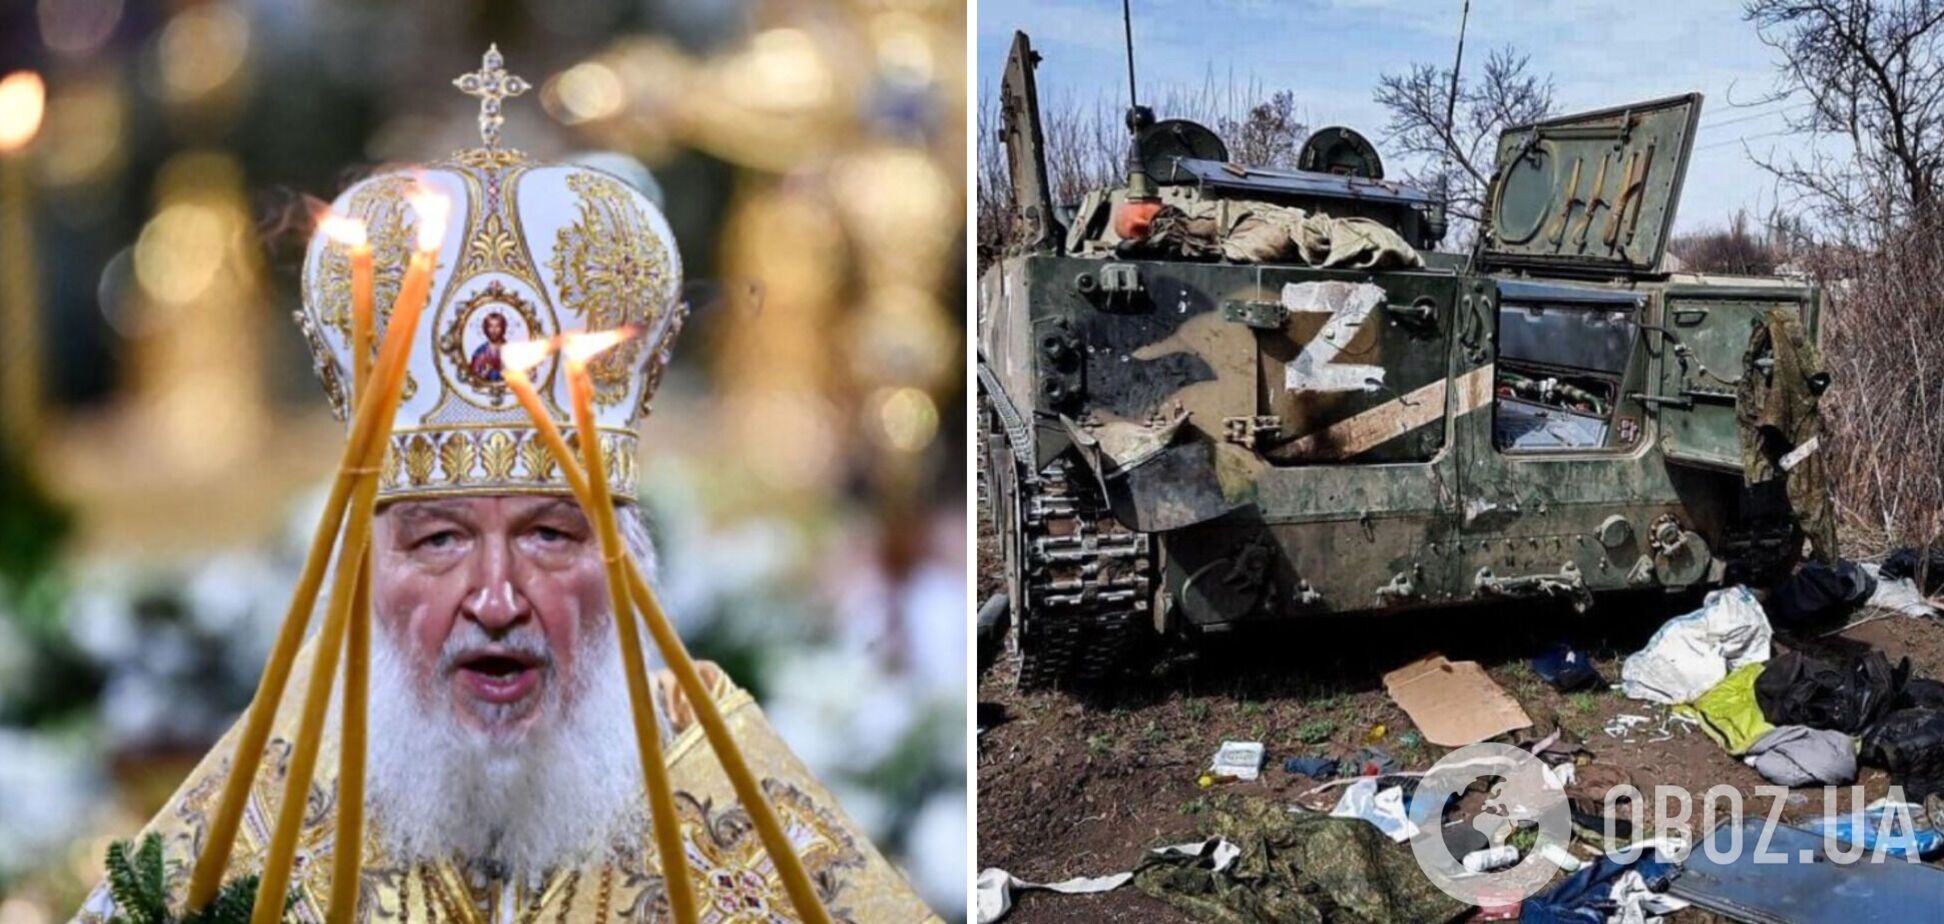 Патриарх Кирилл заявил, что поражение России в войне будет означать конец света, и попытался напугать последствиями